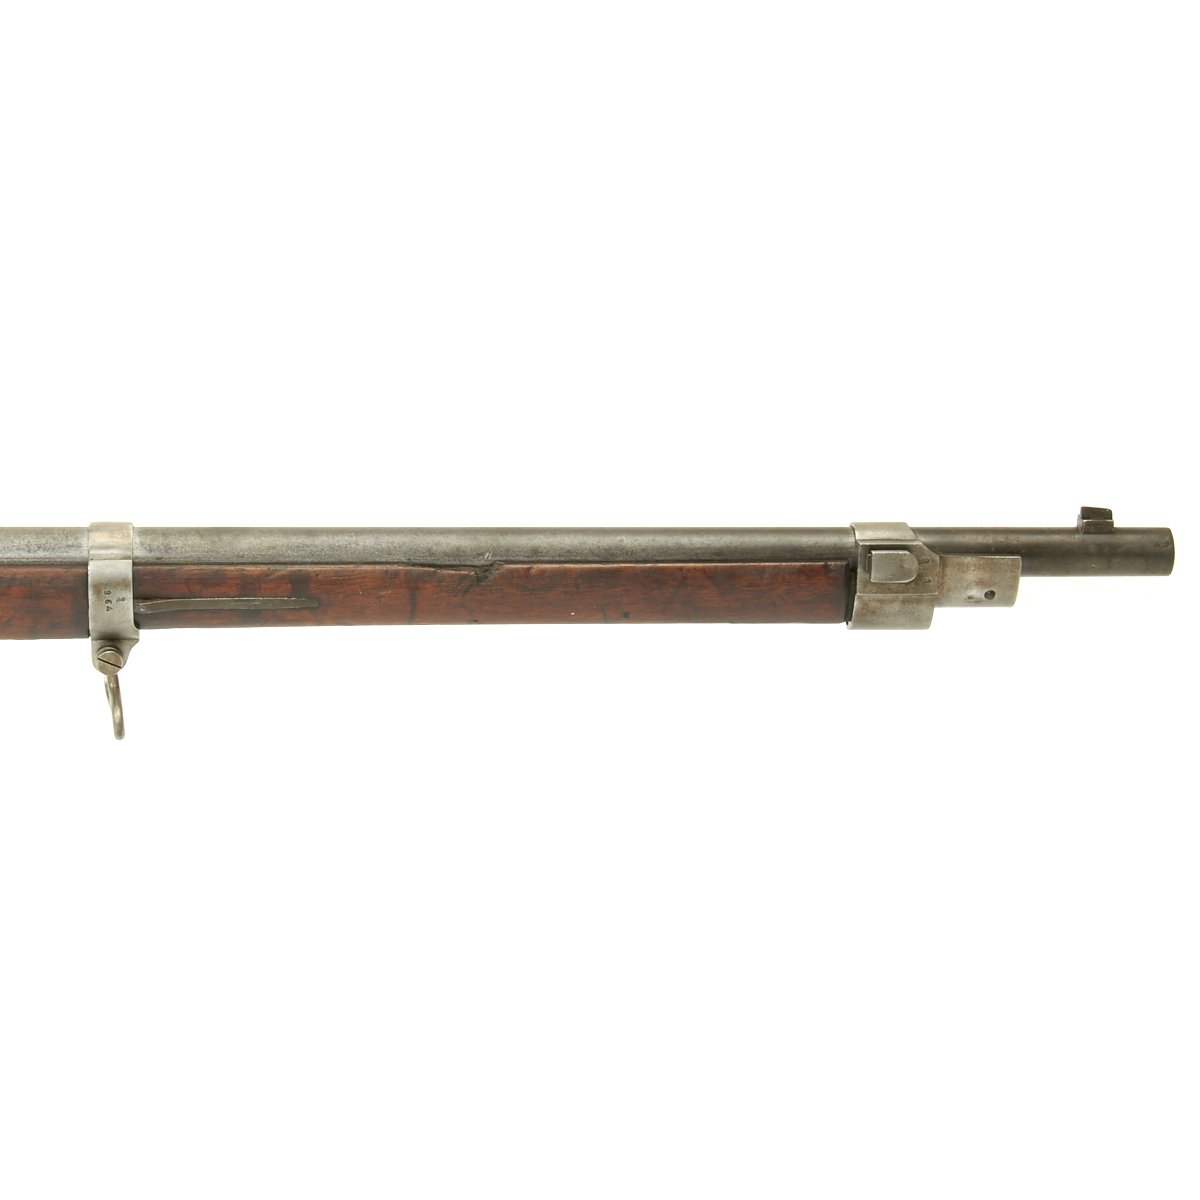 german mauser rifle serial numbers